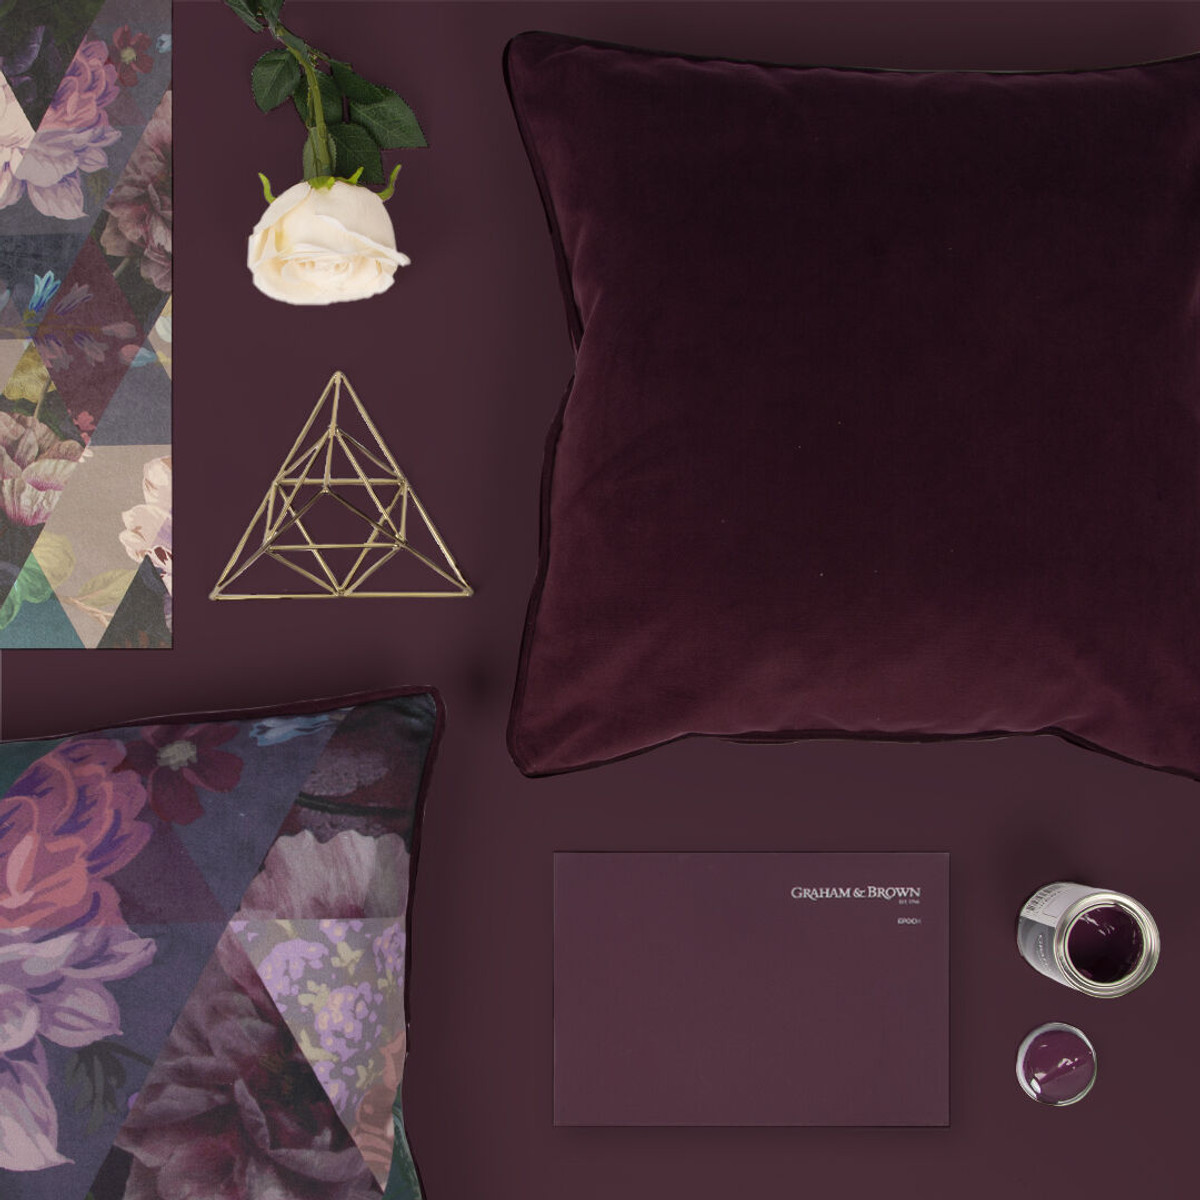 Damson Purple Opulence Cushion